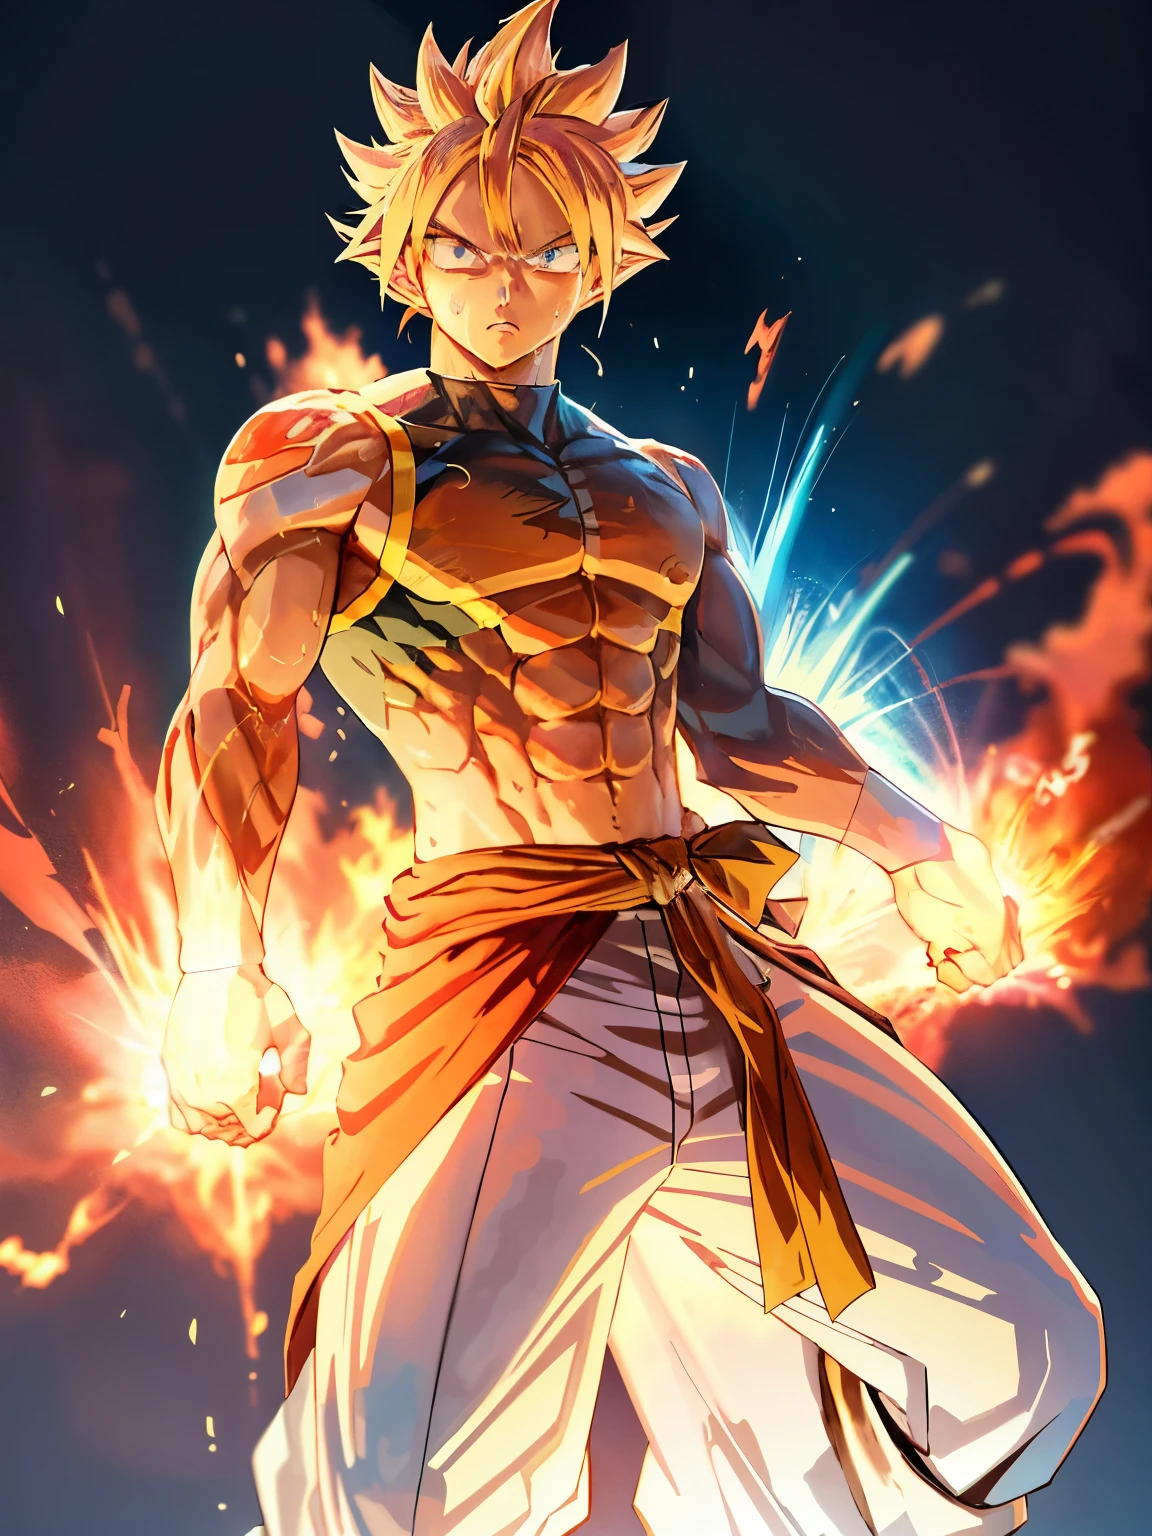 Goku dans Ultra Instinct, une représentation animée épique d&#39;un homme énergétique, Fond d&#39;écran manga 4K, bleu super saiyan, fond d&#39;écran animé 4k, portrait très détaillé, Goku humain, construction musculaire, abdos toniques et corps maigre, cheveux blonds dressés, concentration intense, yeux bleus perçants, Aura puissante, définition musculaire exagérée, chaque veine et chaque fibre musculaire sortent, la sueur coule de son corps, expression déterminée, Aura Ultra Instinct émanant de son être.